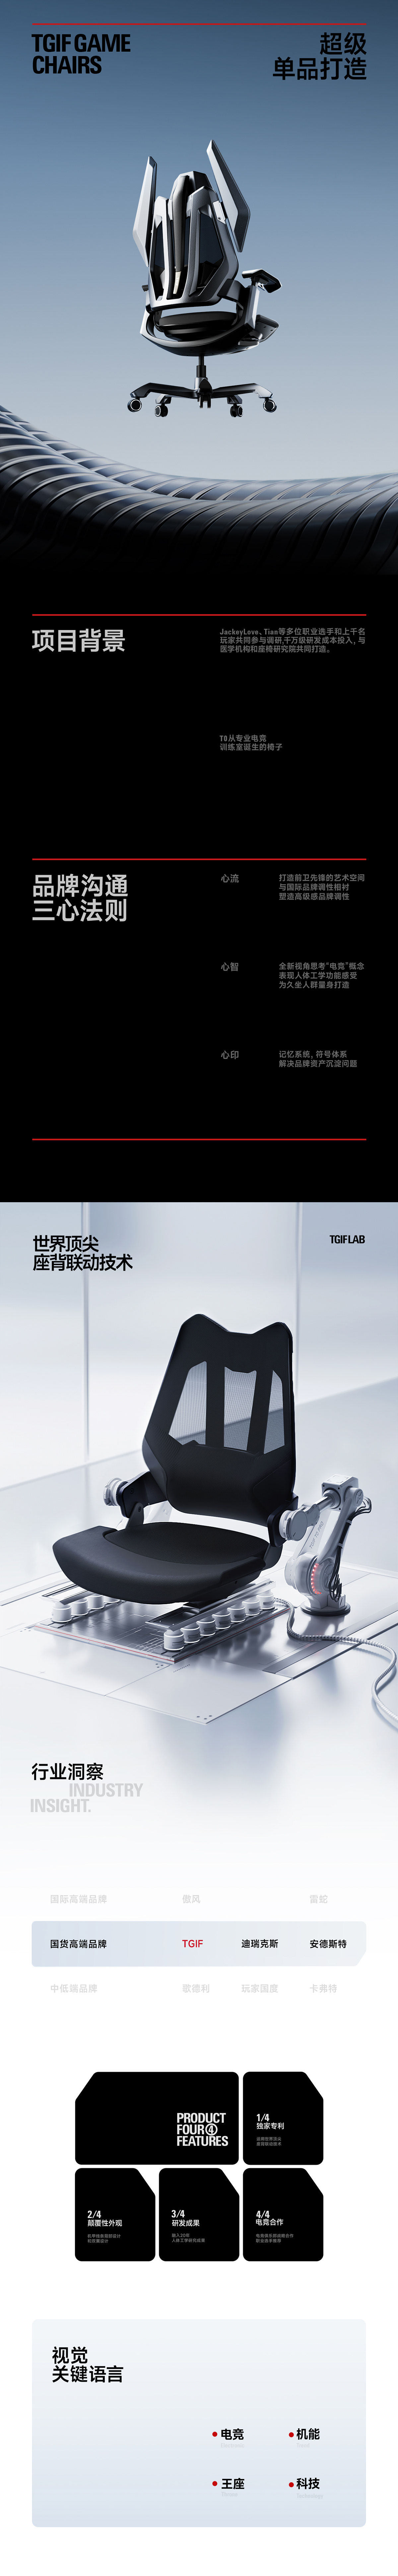 design tgif 产品设计 品牌设计 商业设计 电商设计 电竞椅 西九里 设计 食摄集